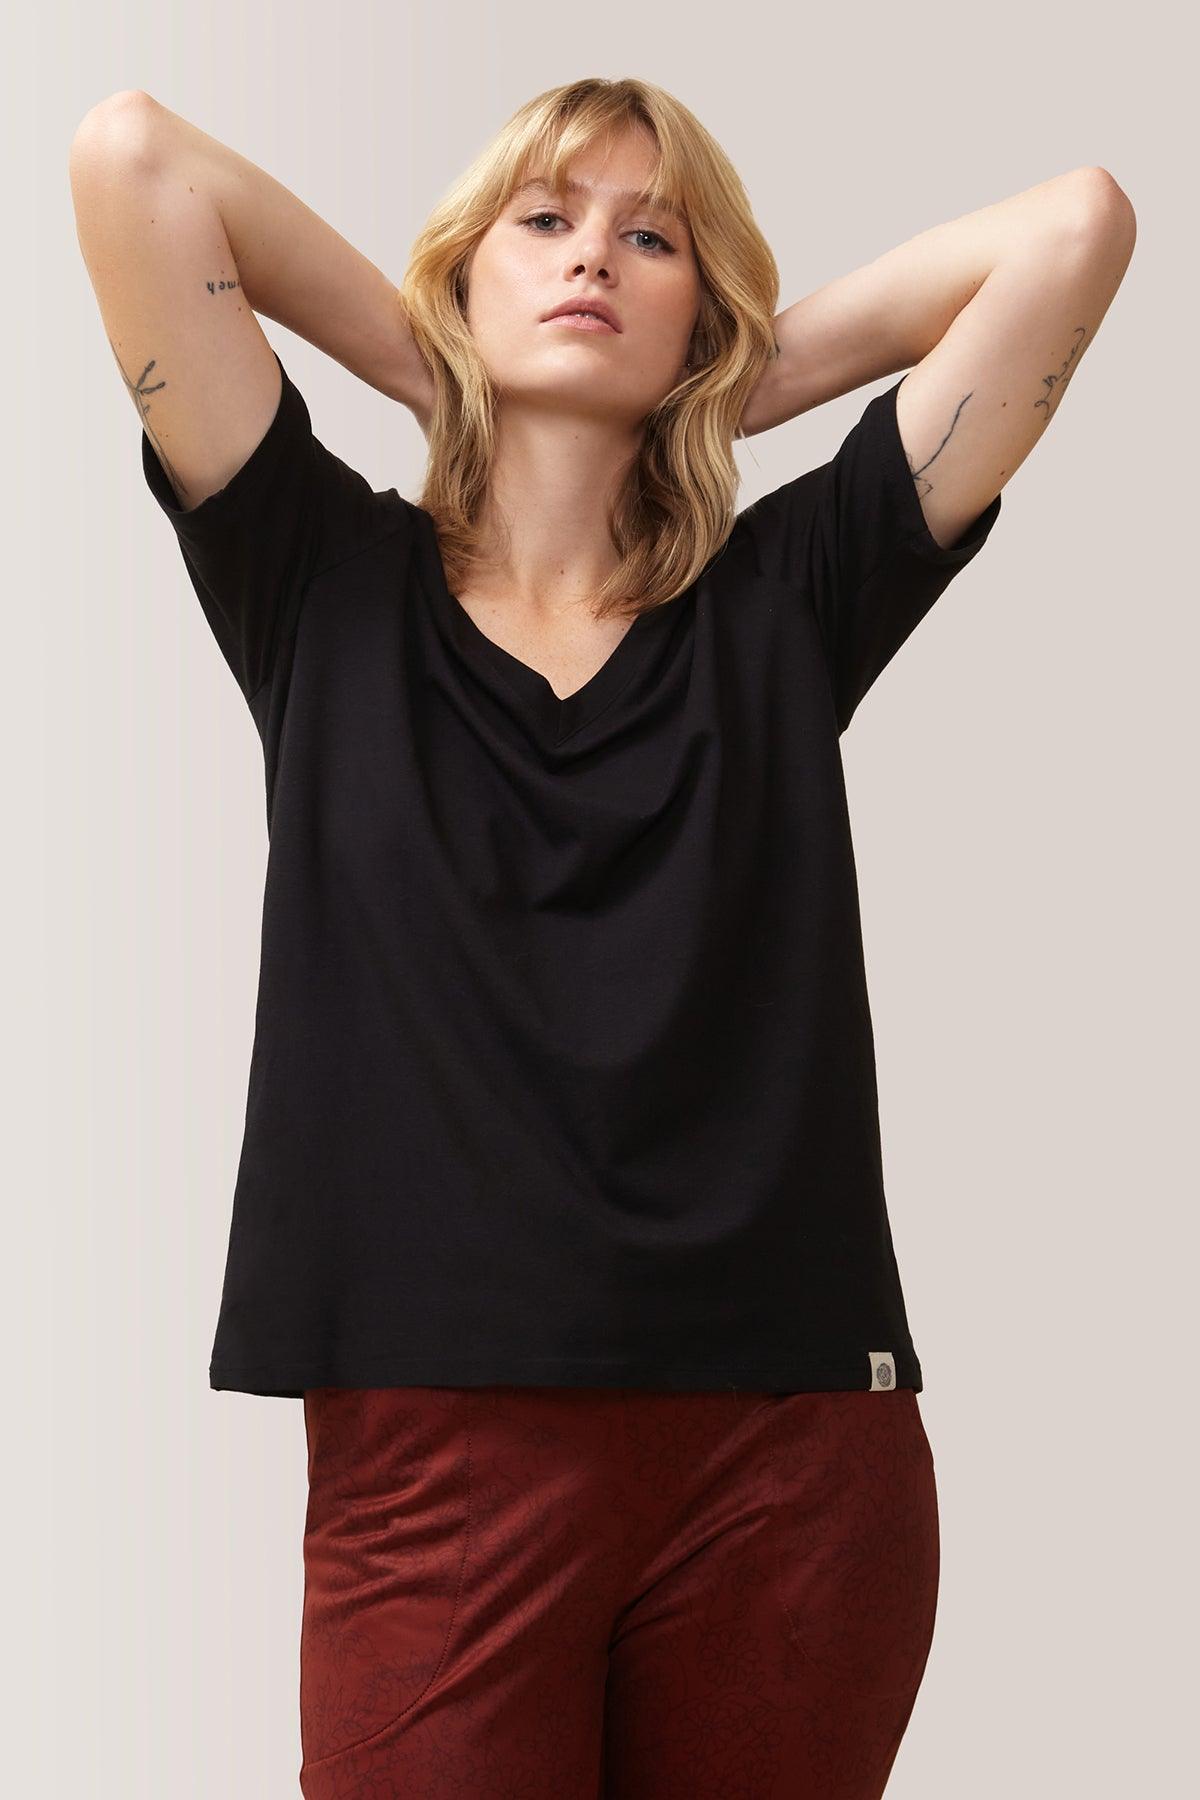 Femme vêtue du t-shirt blissful flow par Rose Boreal. / Women wearing the blissful flow t-shirt by Rose Boreal. - Total Eclipse